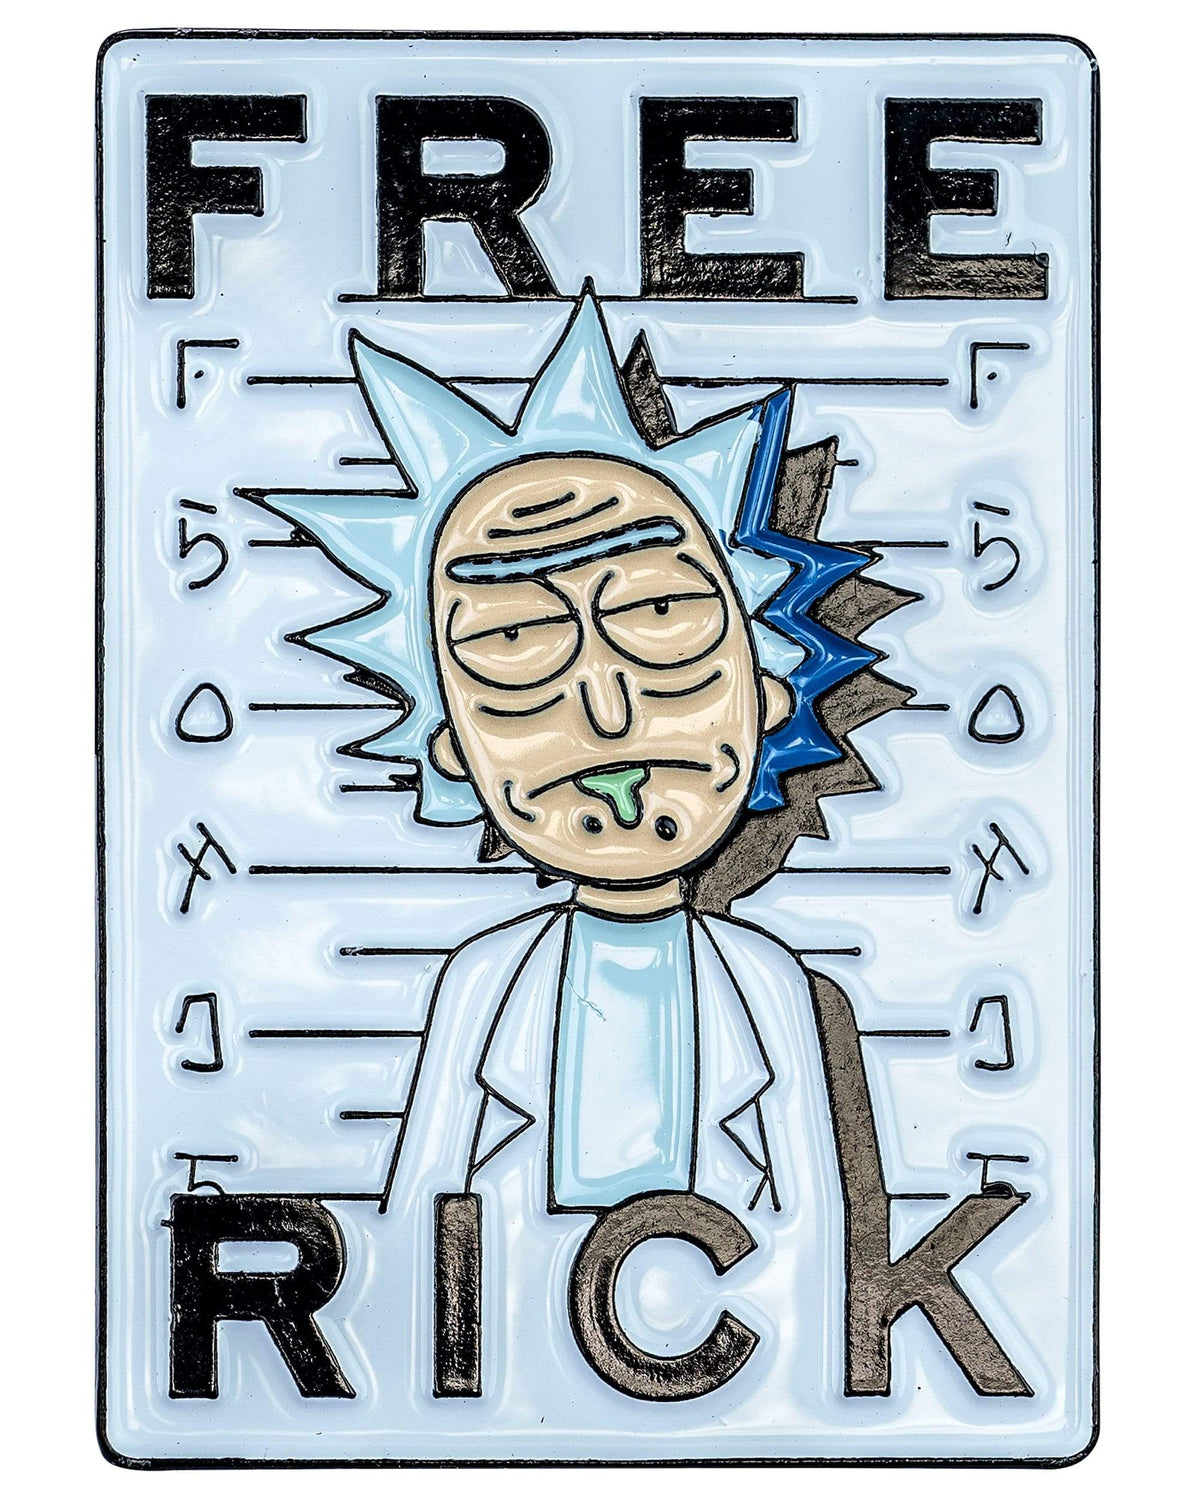 Free Rick Metal Pin